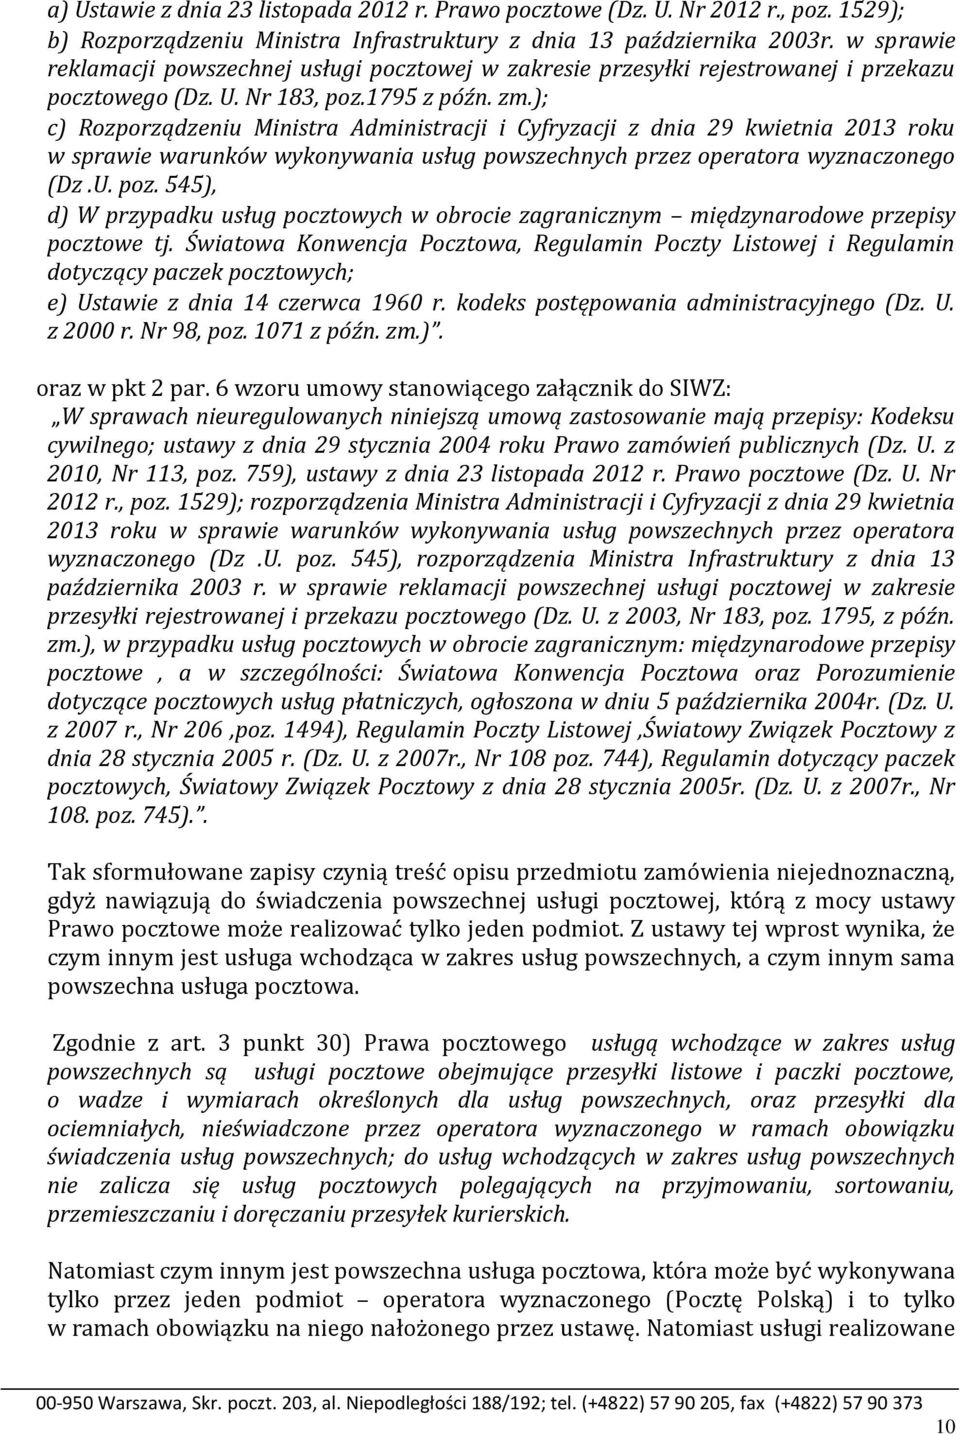 ); c) Rozporządzeniu Ministra Administracji i Cyfryzacji z dnia 29 kwietnia 2013 roku w sprawie warunków wykonywania usług powszechnych przez operatora wyznaczonego (Dz.U. poz.